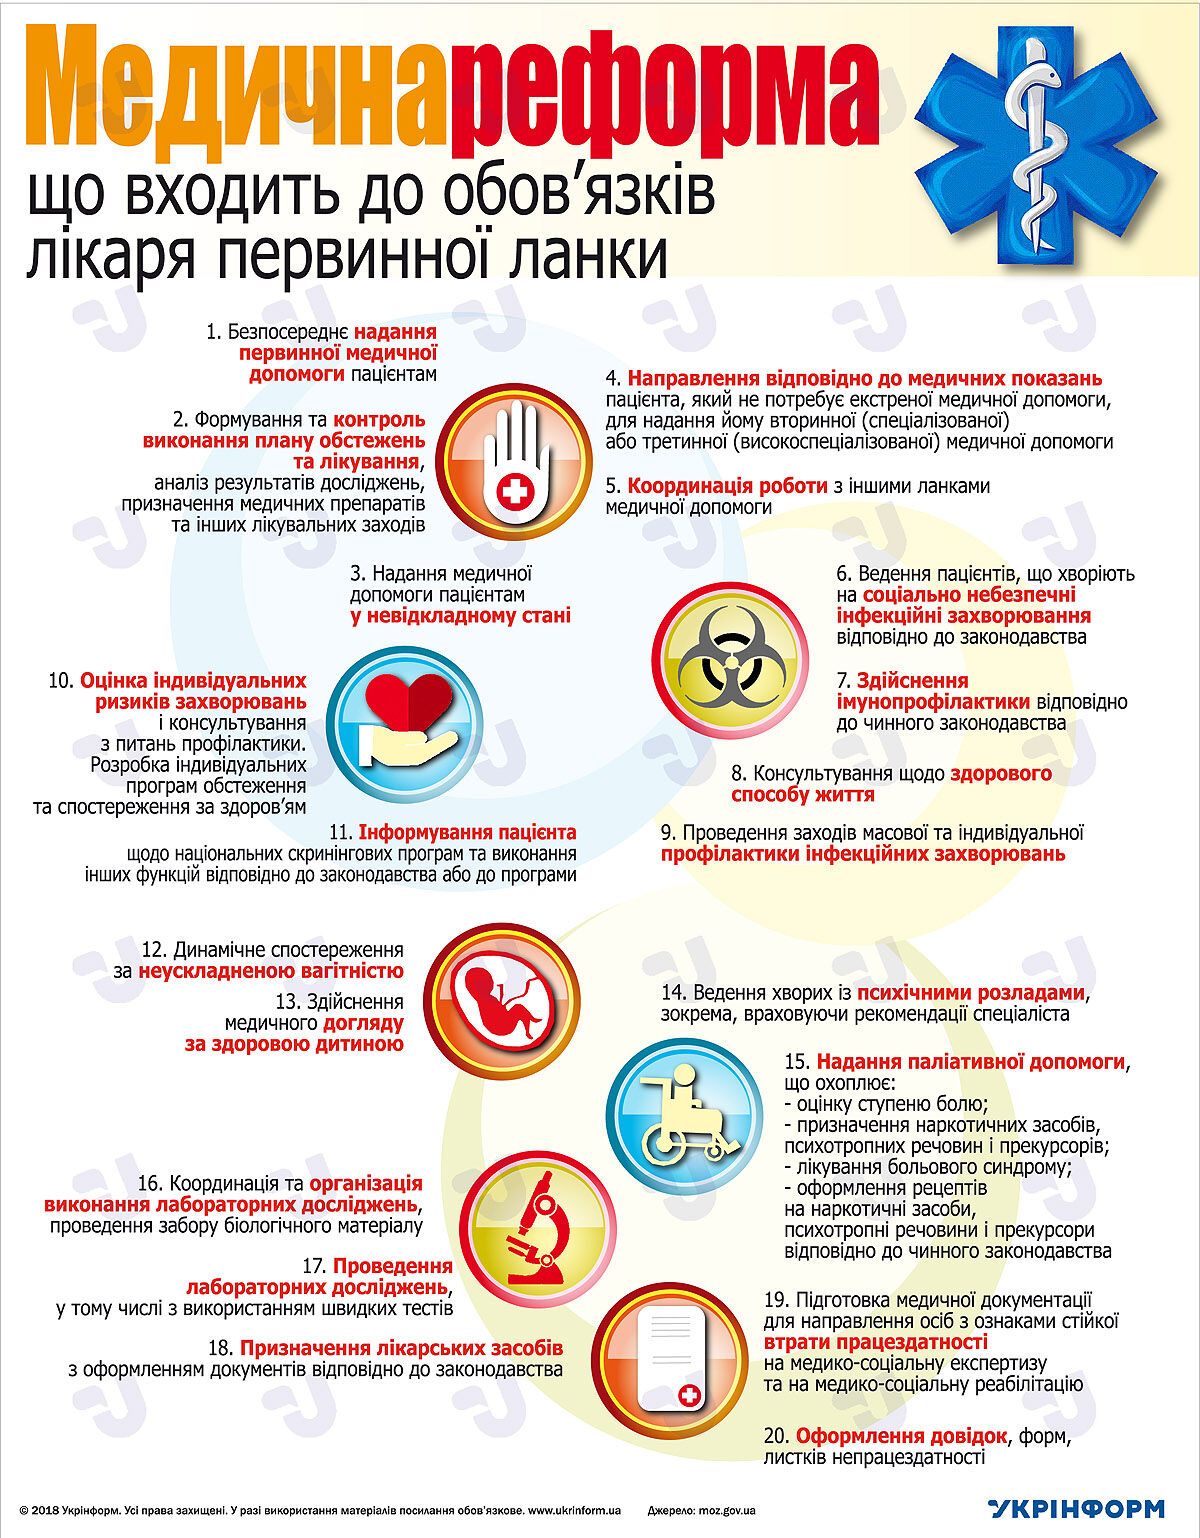 Новые правила обращения к врачу в Украине: появился подробный перечень услуг